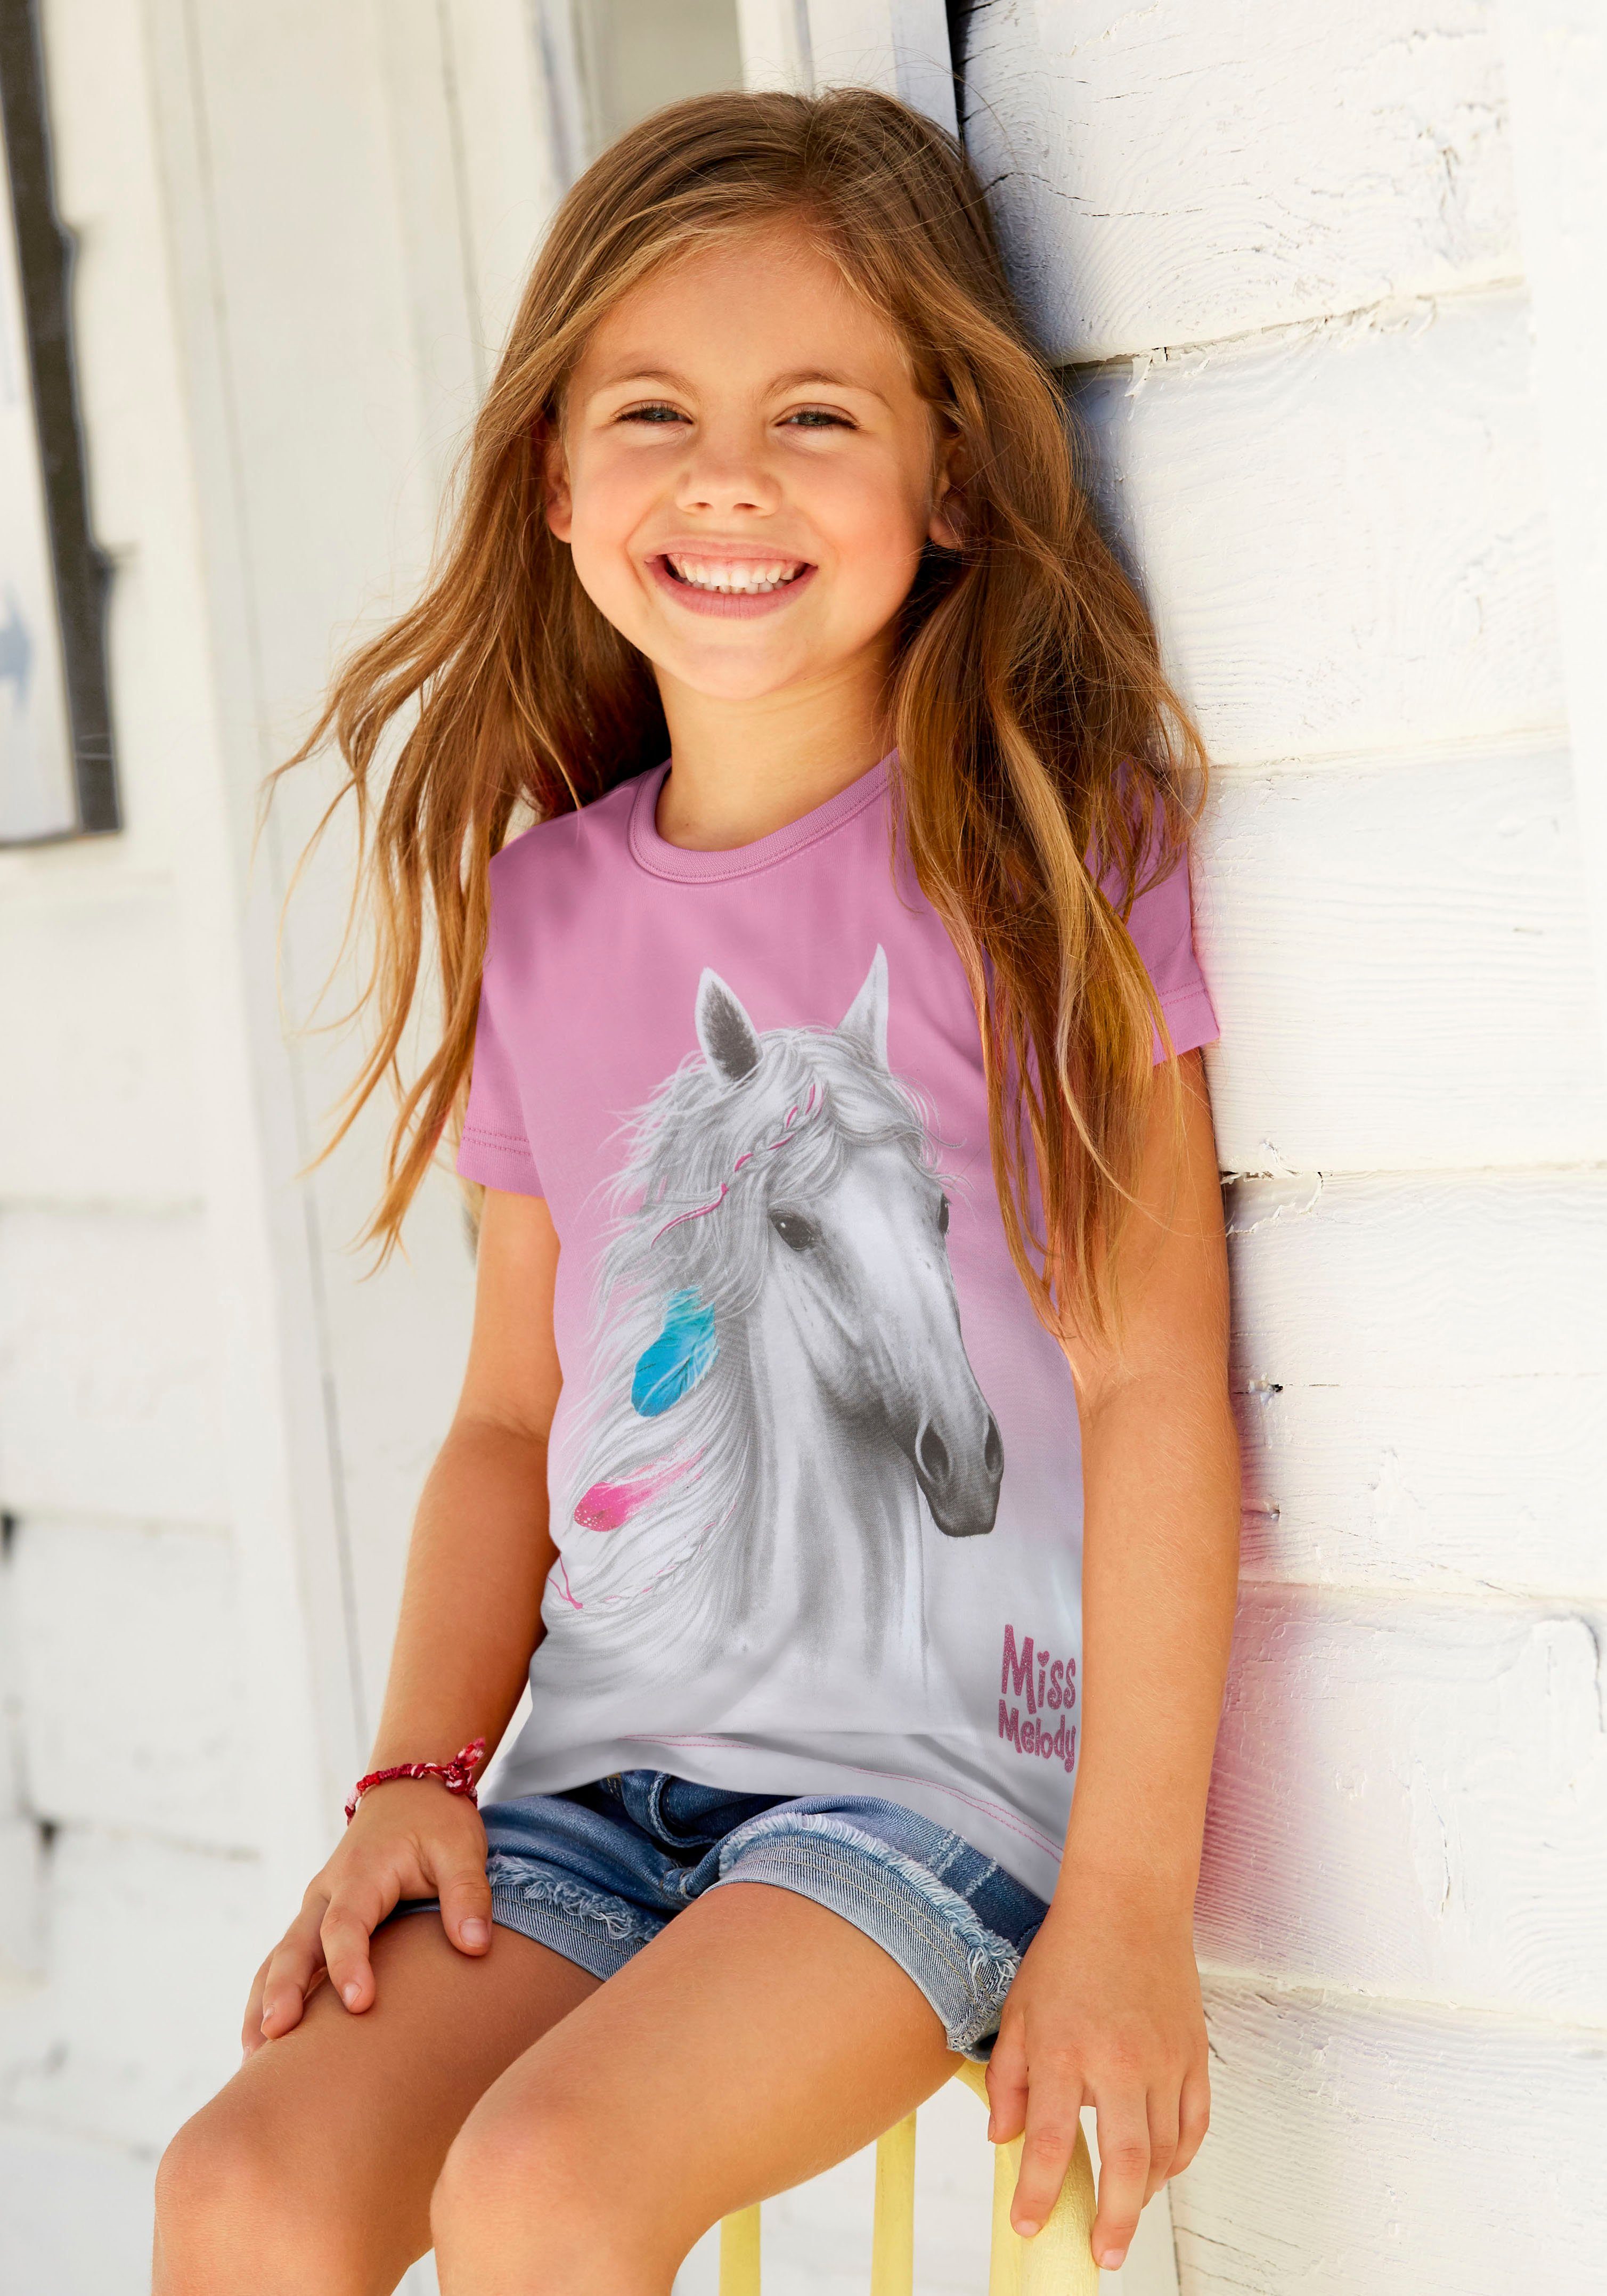 Miss Melody T-Shirt mit Pferdemotiv schönem